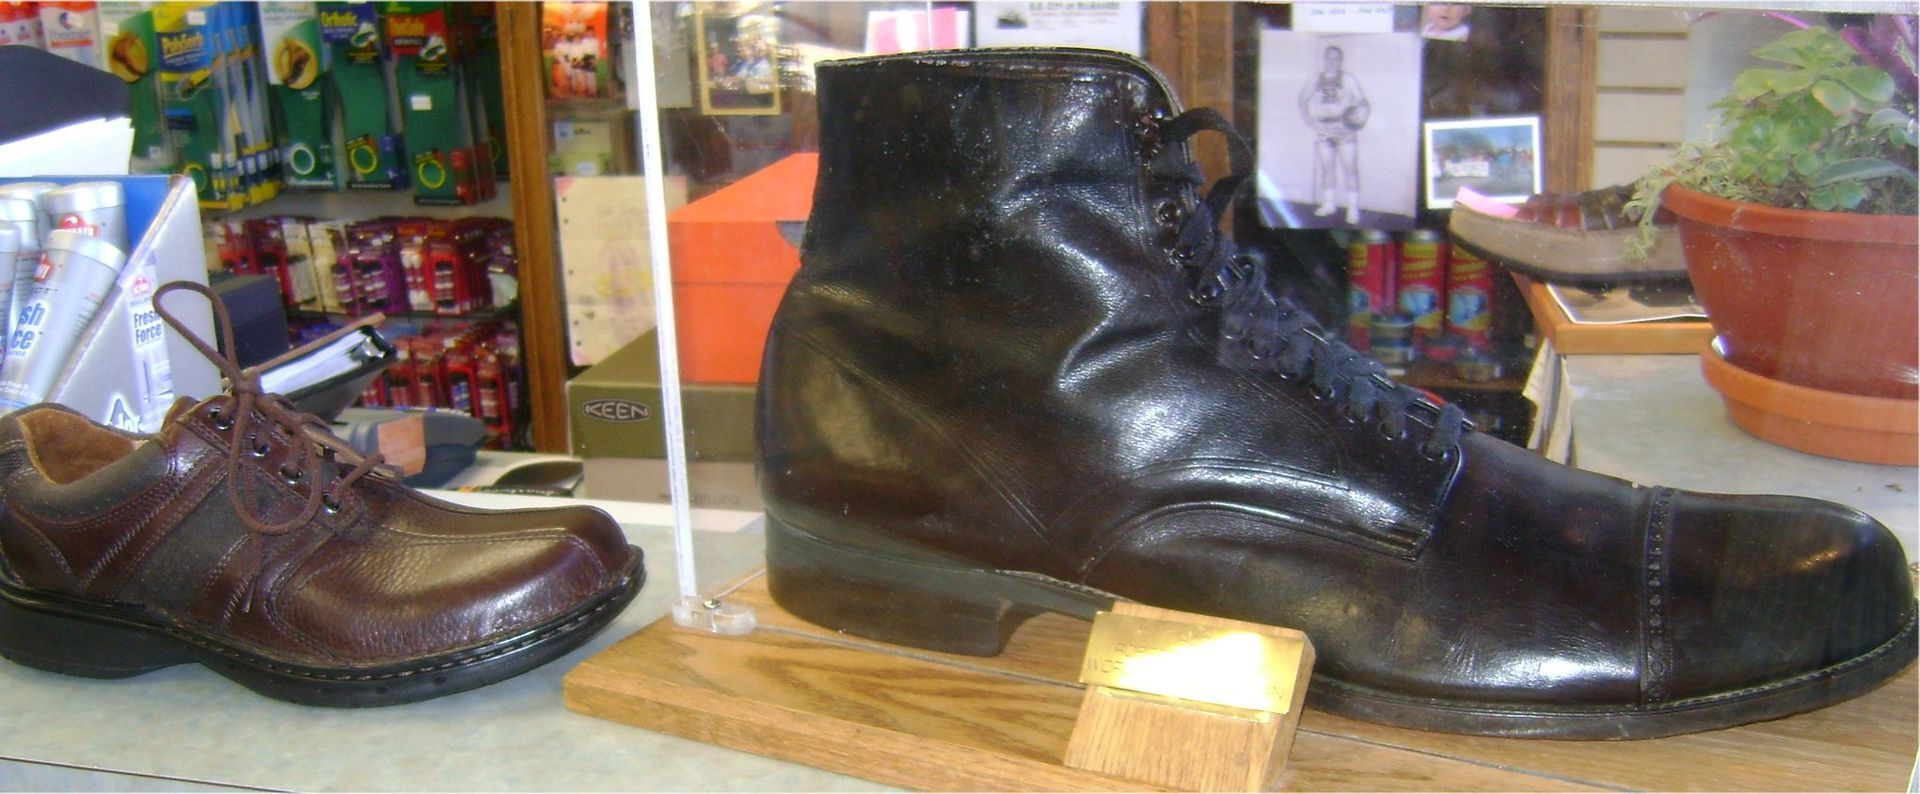 Обувь Роберта Уодлоу по сравнению с мужскими ботинками 44-го размера